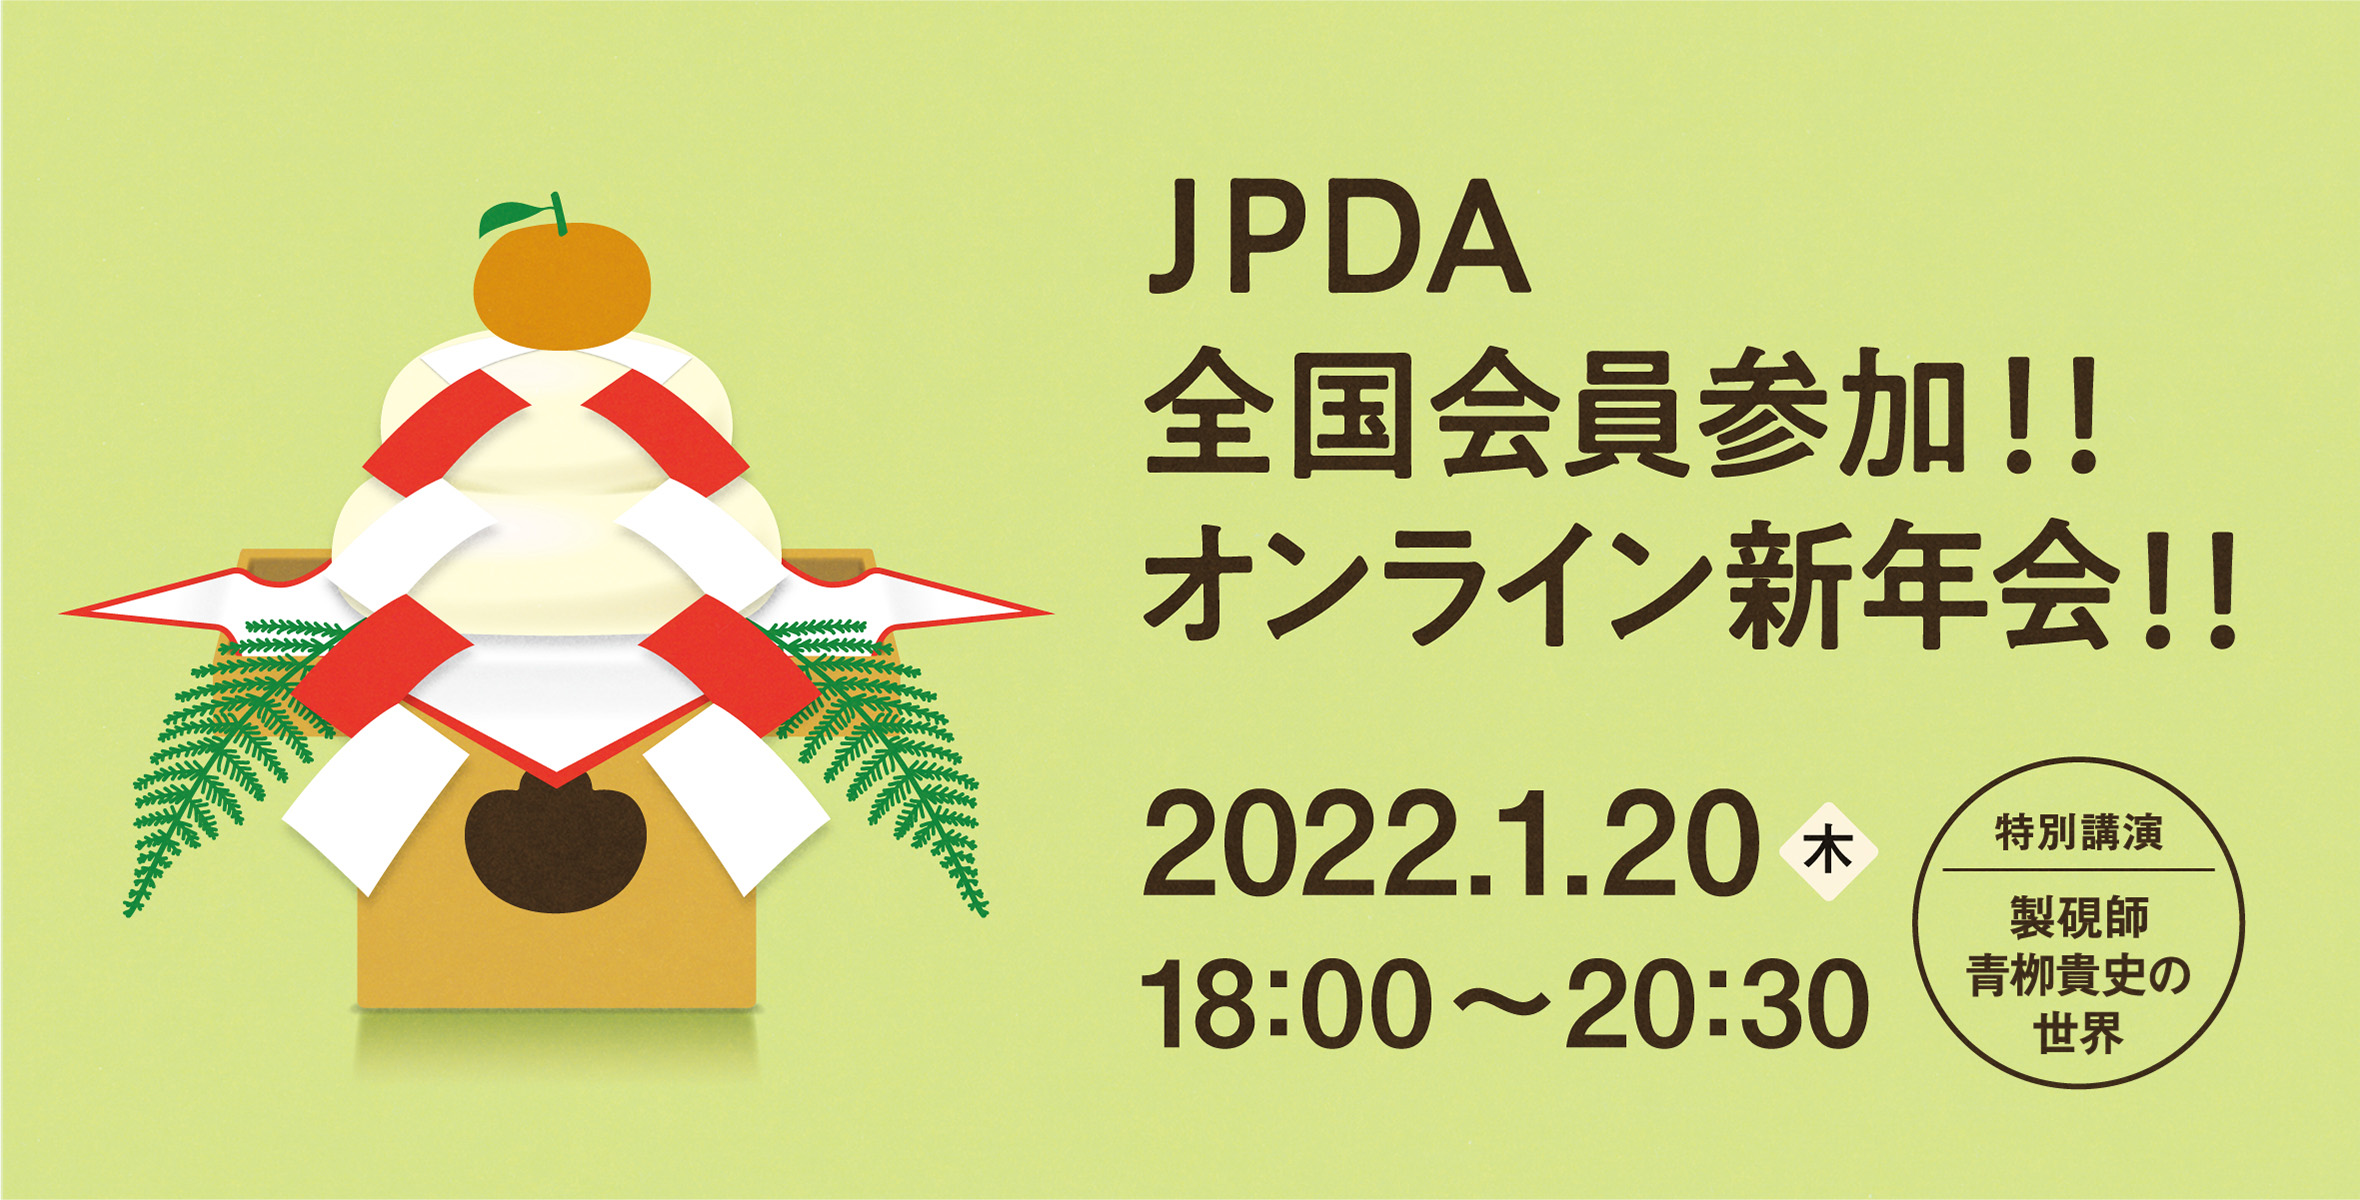 JPDAオンライン新年会2022のイメージ